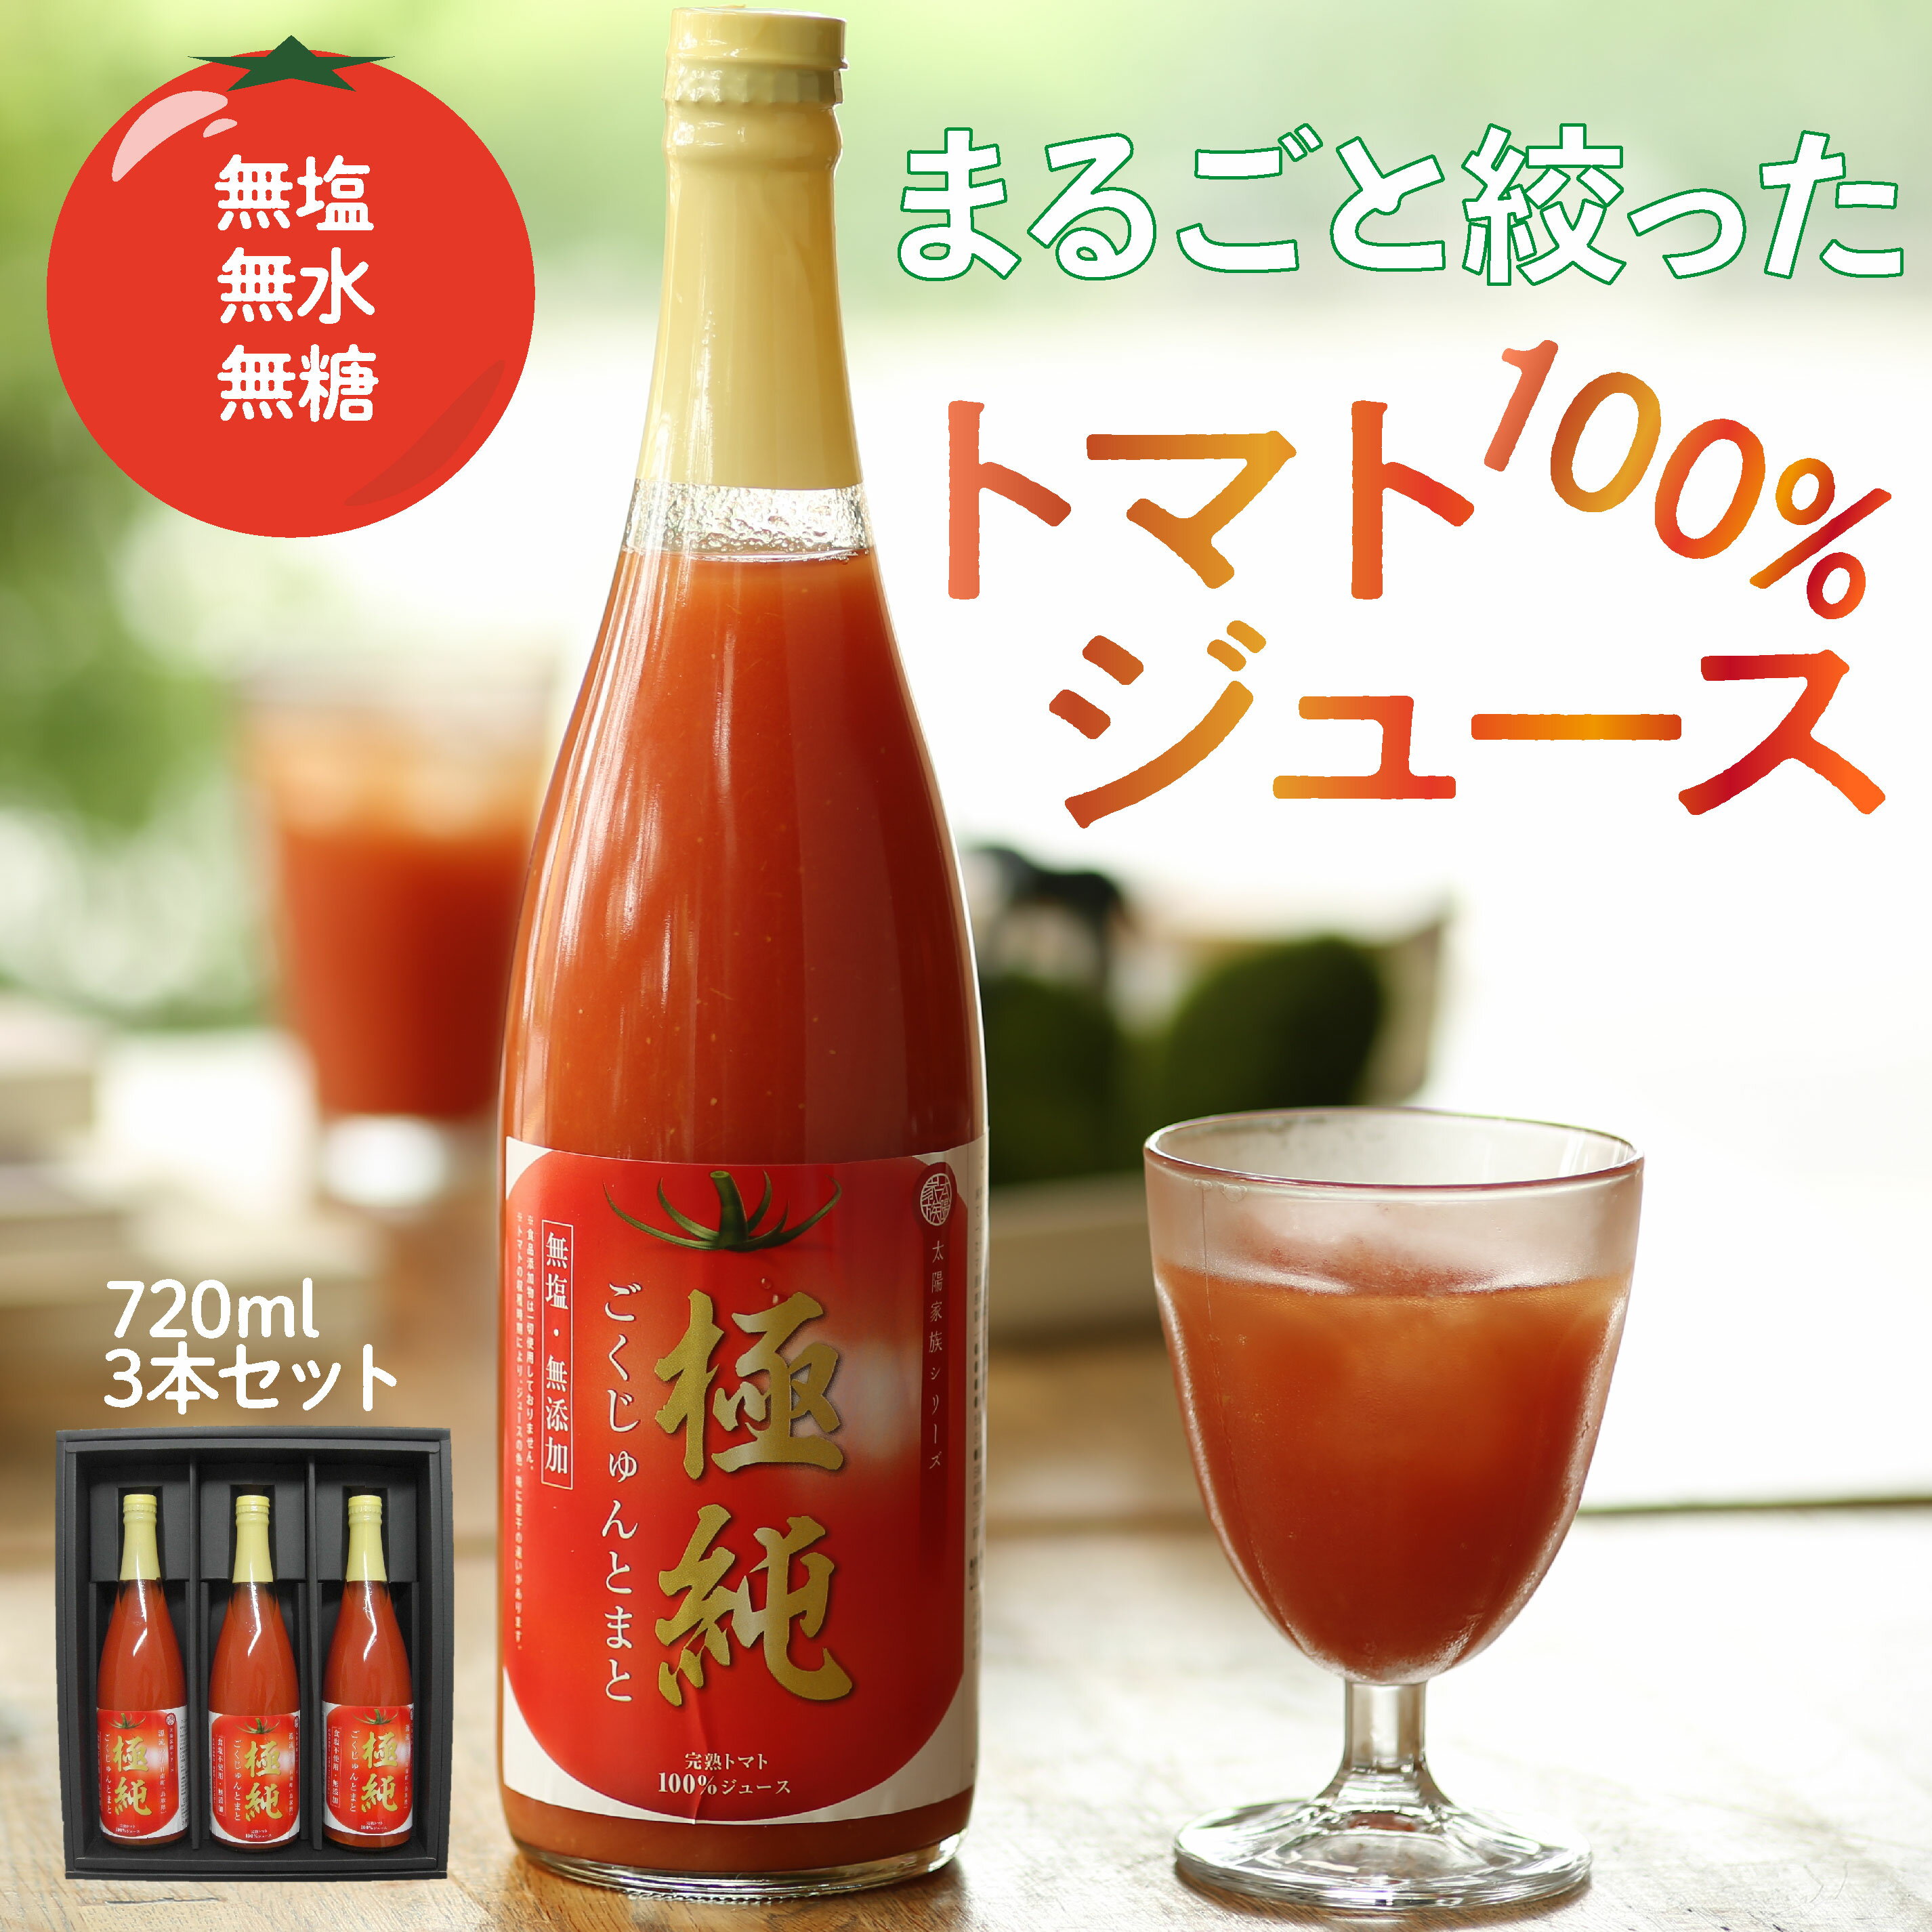 日南トマト加工株式会社 極純 鳥取県日南町産 720ml 3本セット 食塩無添加 トマトジュース とまとジュース トマト とまと